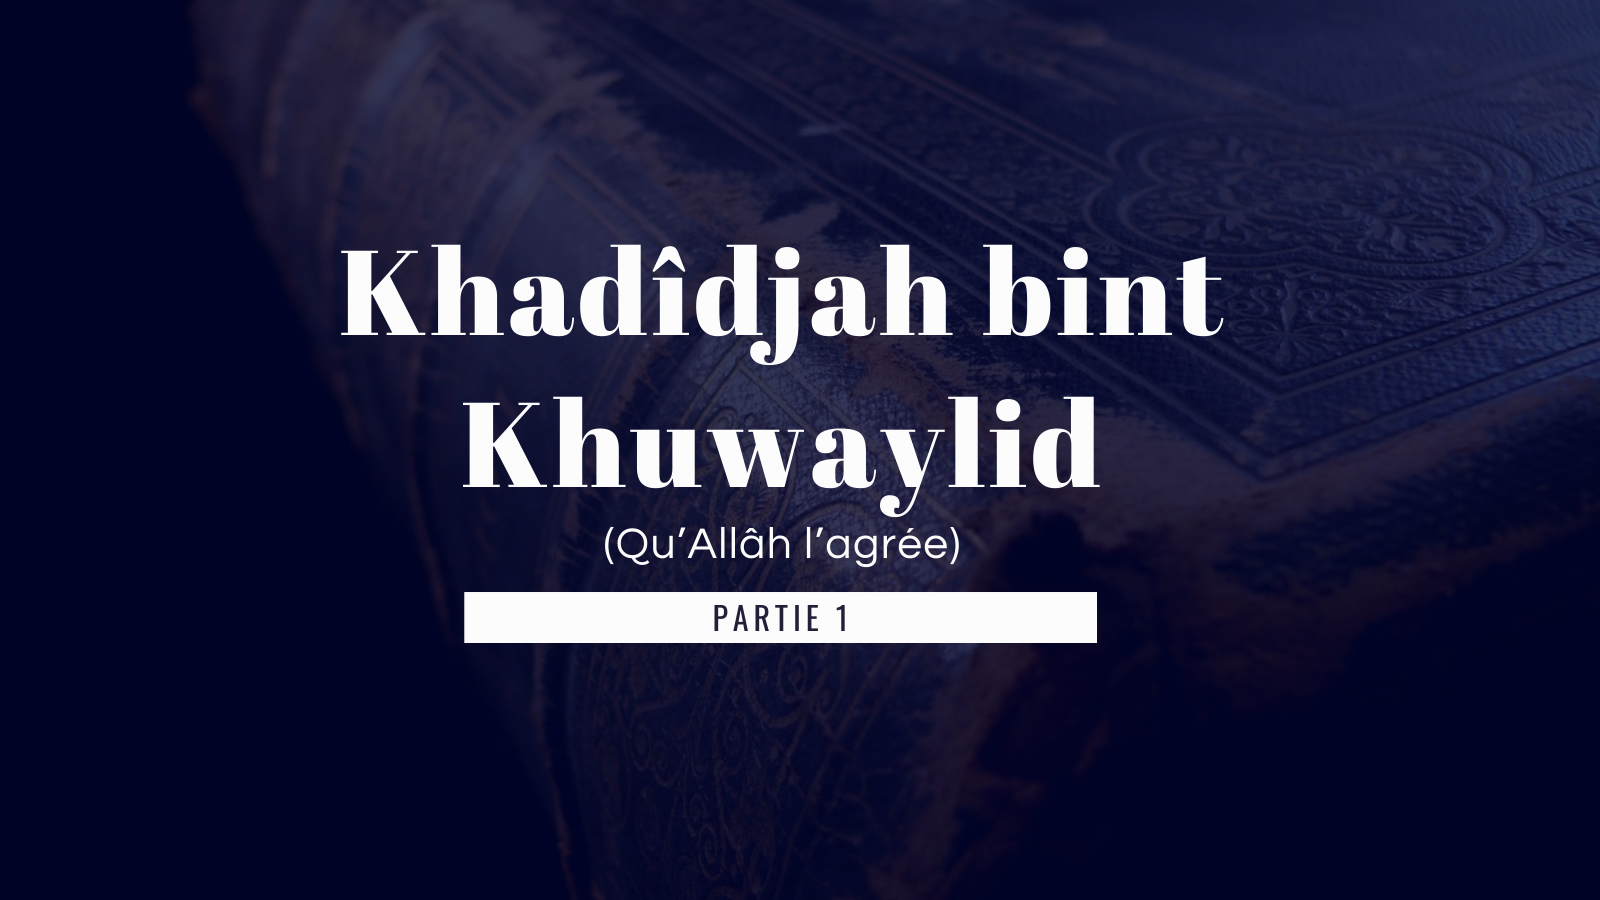 La famille de Khadija bint Khuwaylid ( Partie 1 )